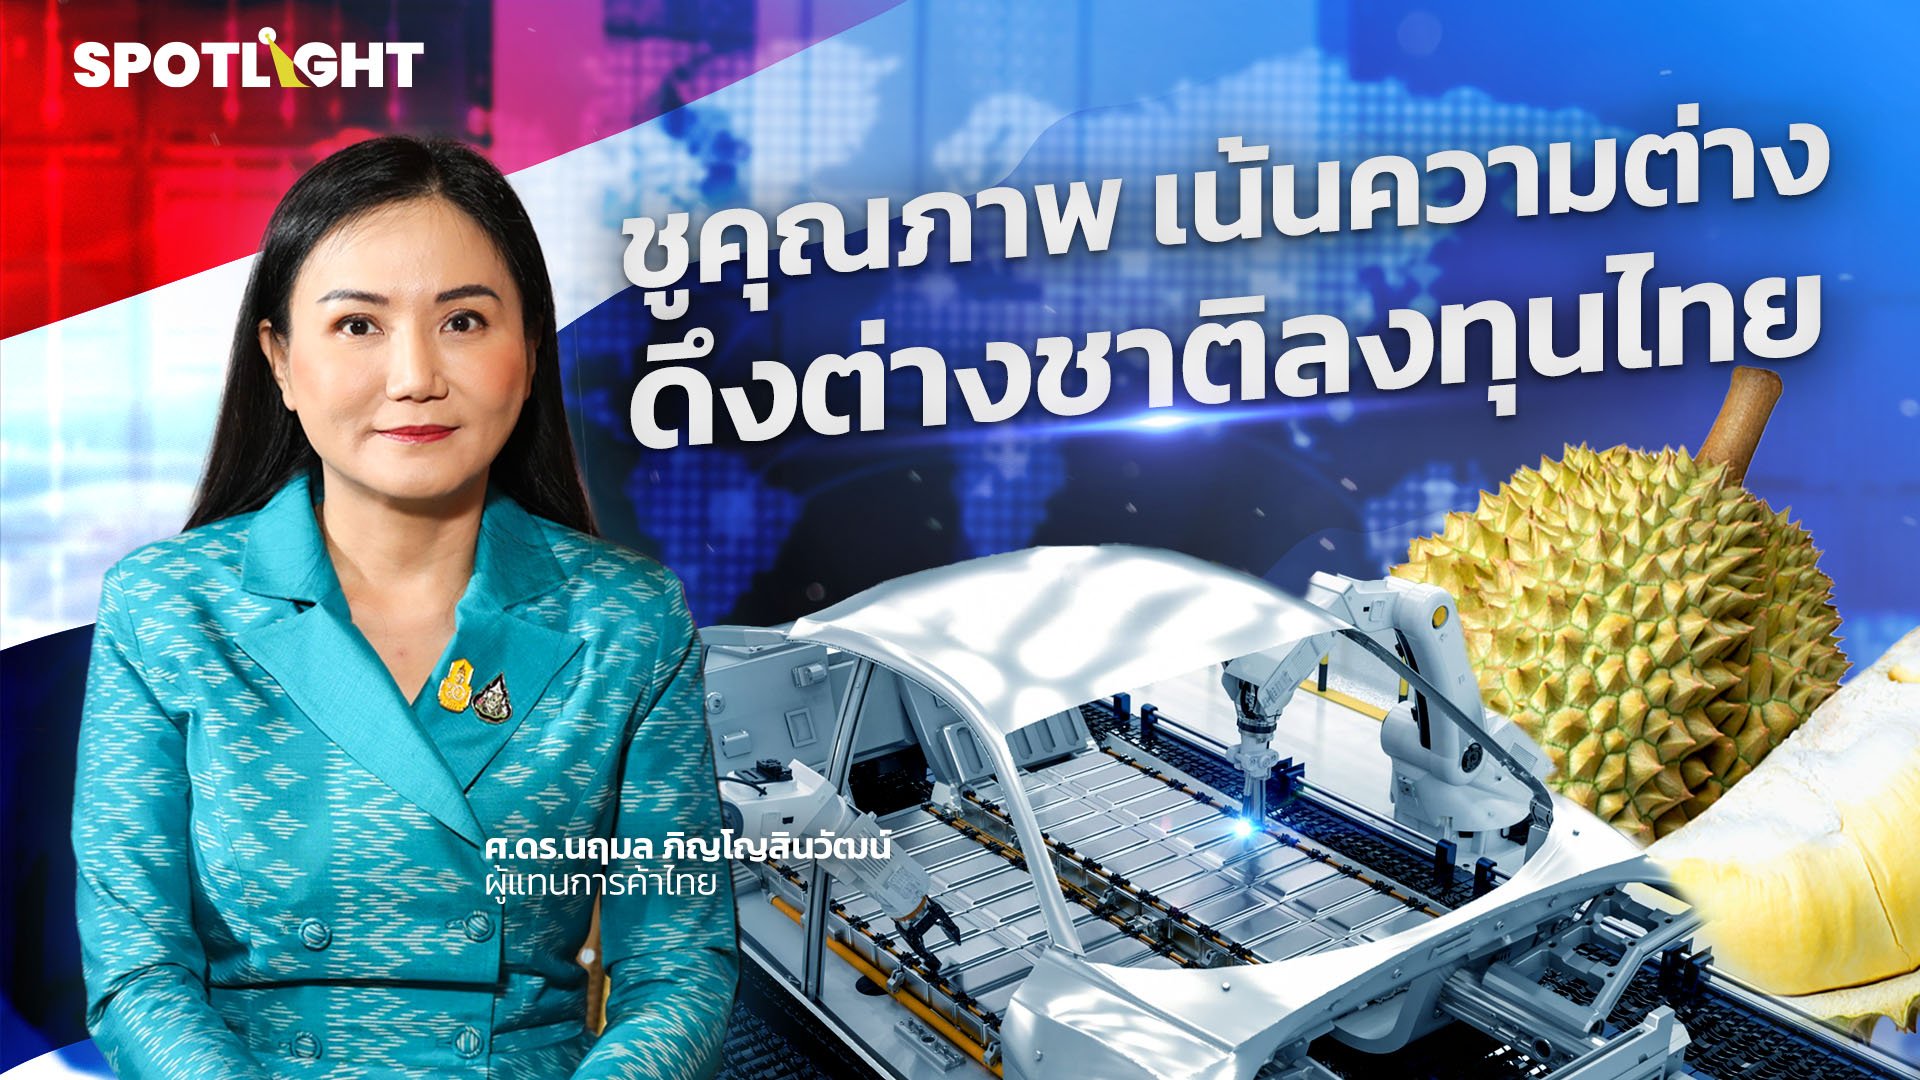 ชูคุณภาพ เน้นความต่าง ดึงต่างชาติลงทุนไทย | Spotlight | 14 ก.พ. 67 | AMARIN TVHD34